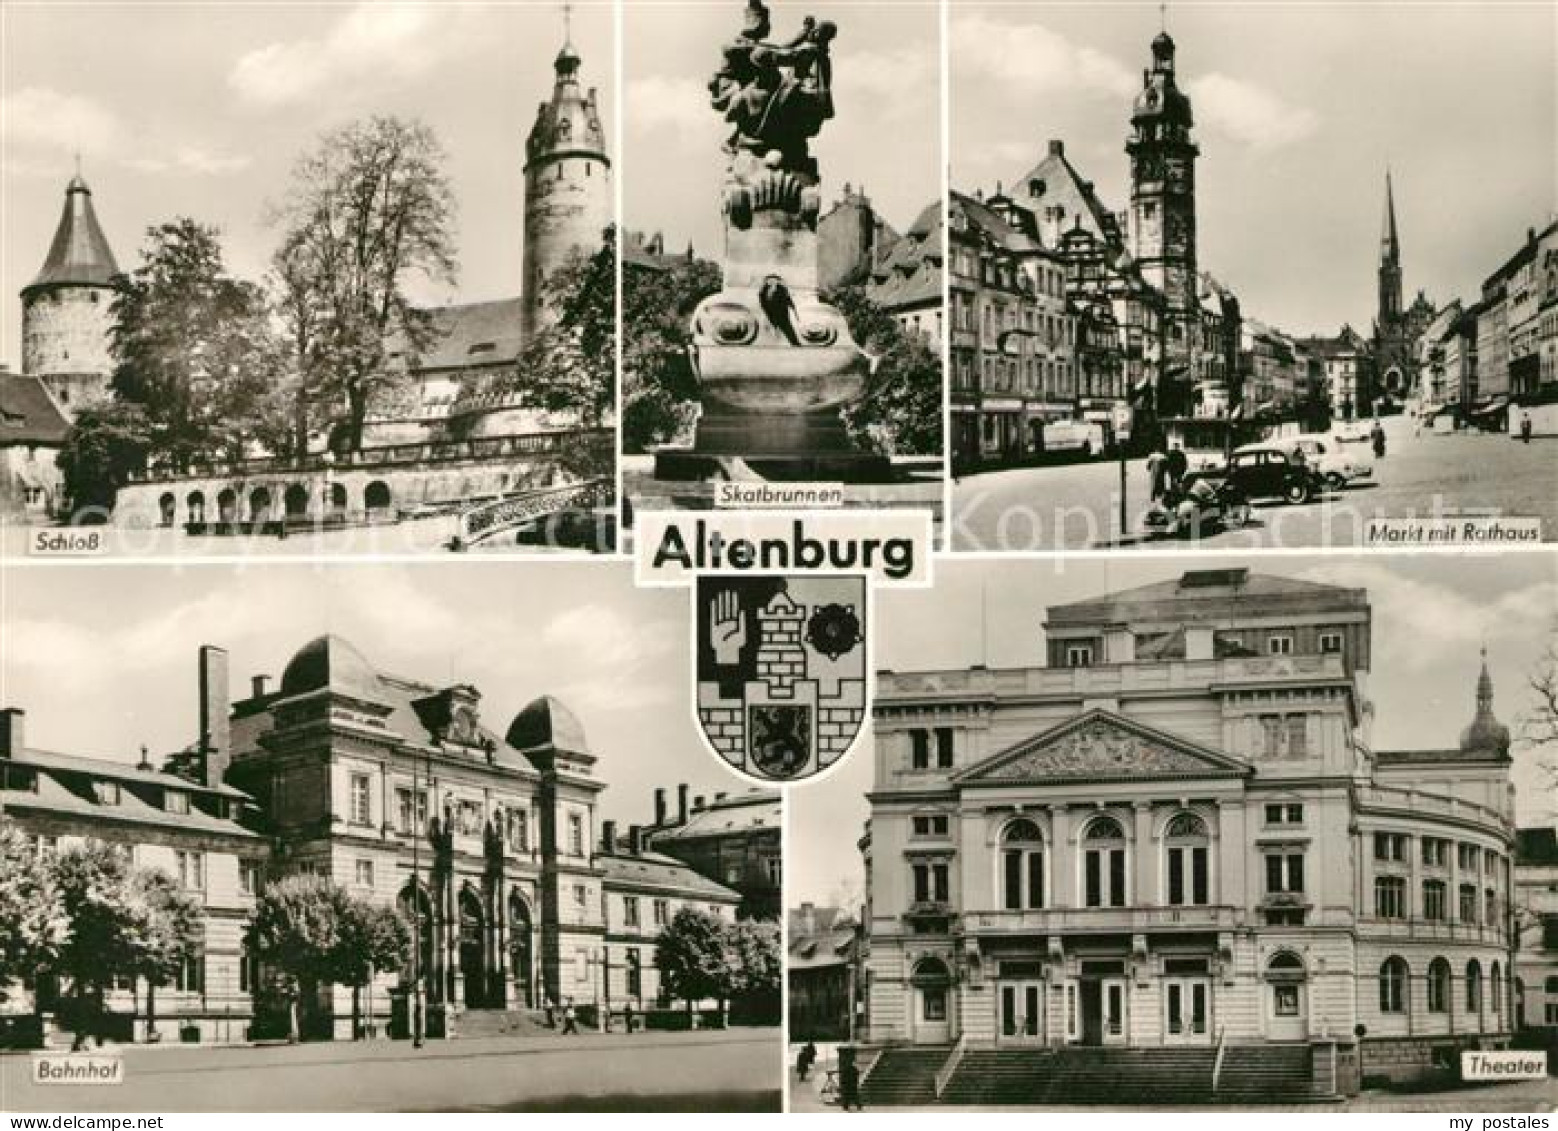 73043833 Altenburg Thueringen Schloss Skatbrunnen Markt Rathaus Bahnhof Theater  - Altenburg